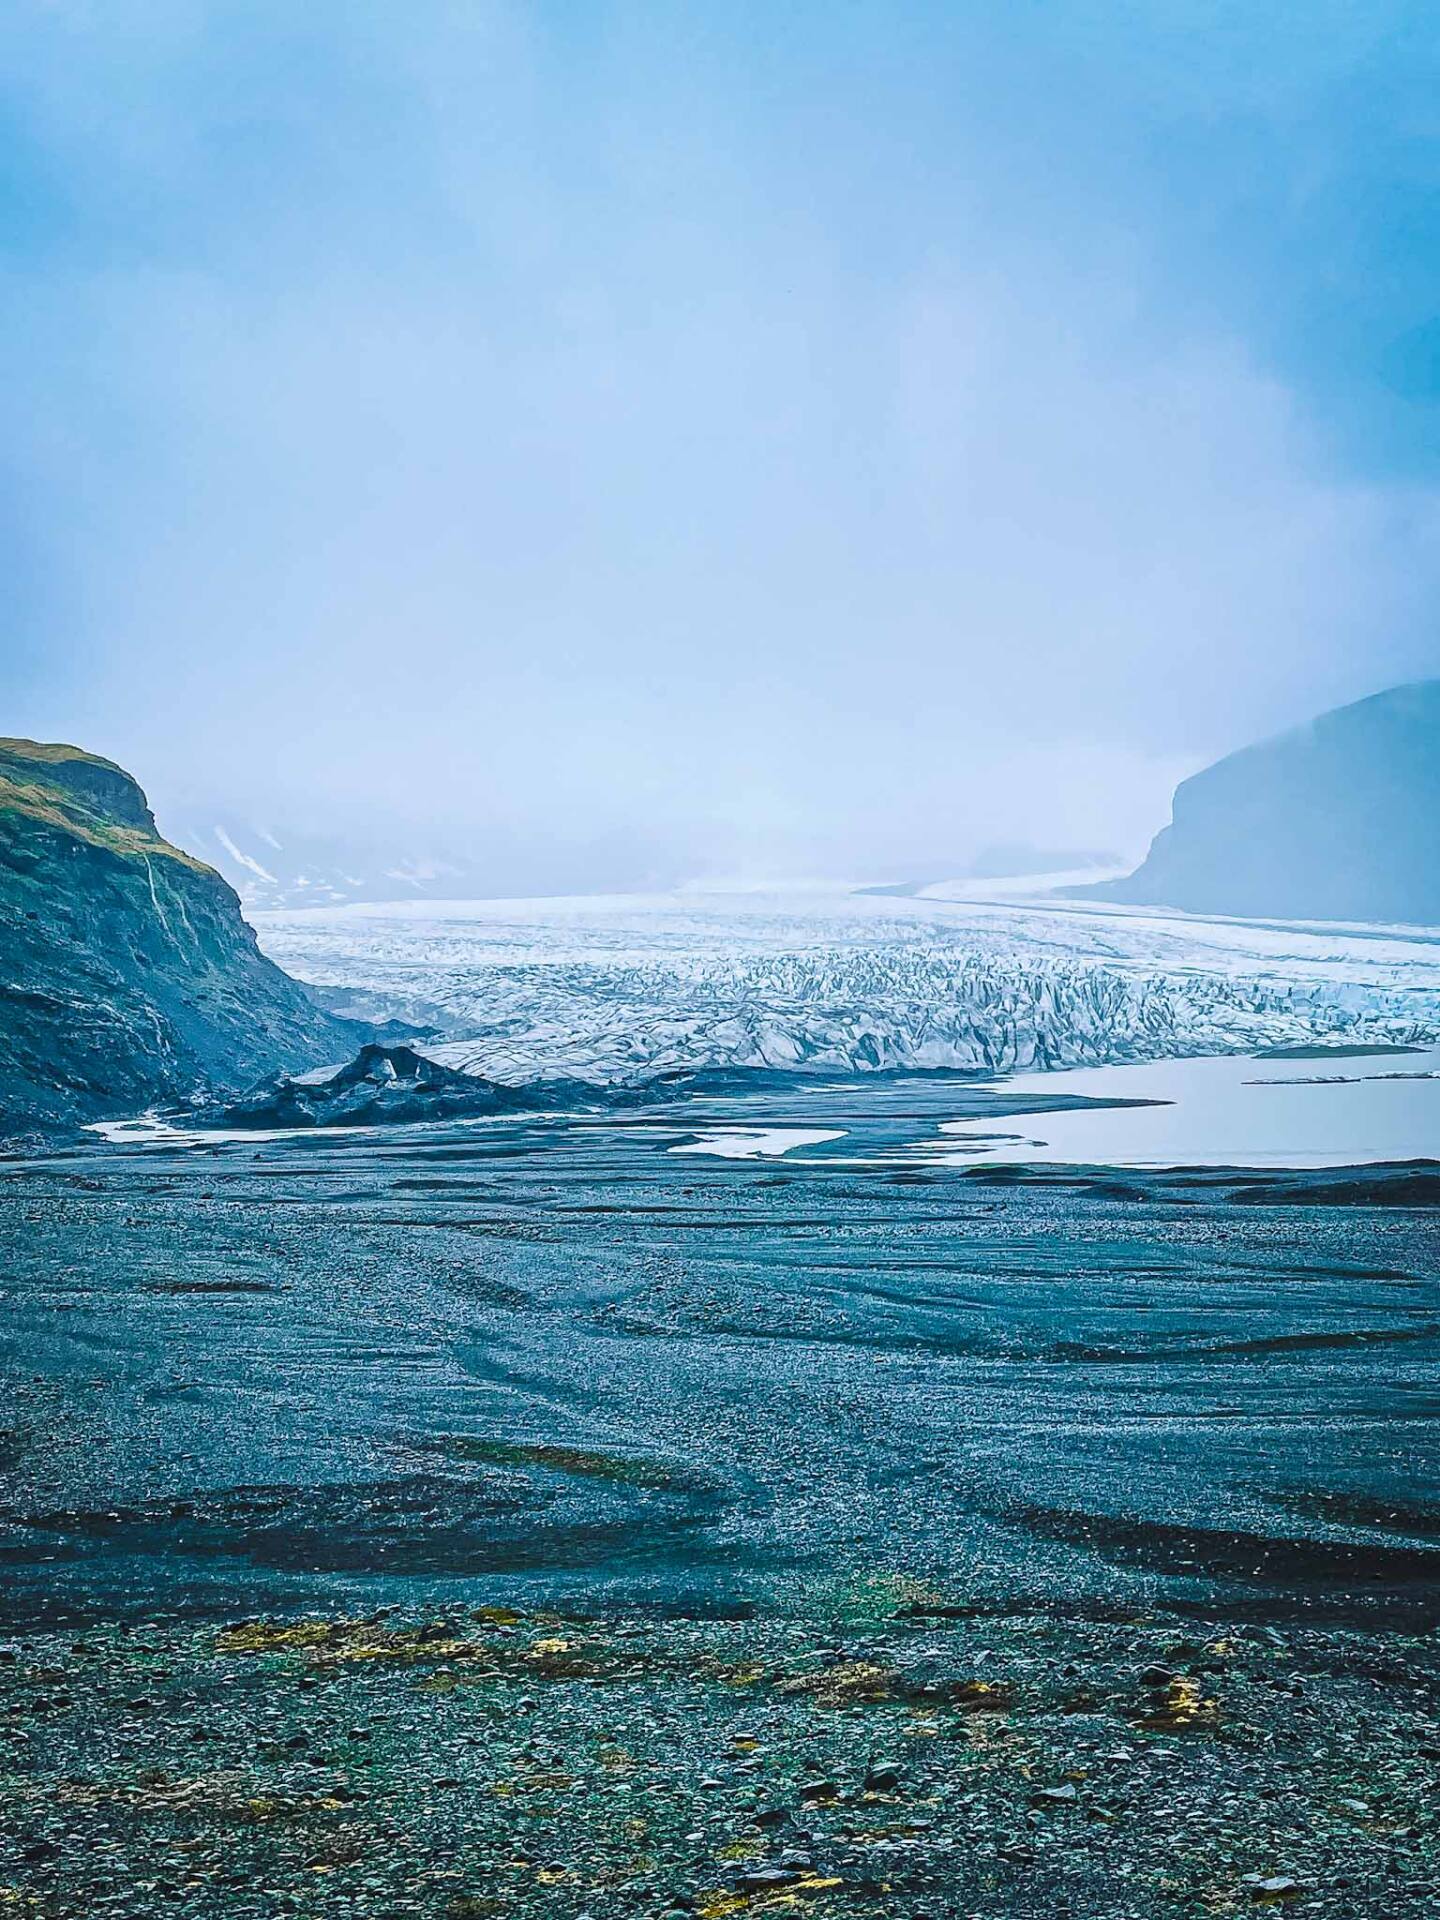 Glaciers in Iceland - Skaftafellsjökull